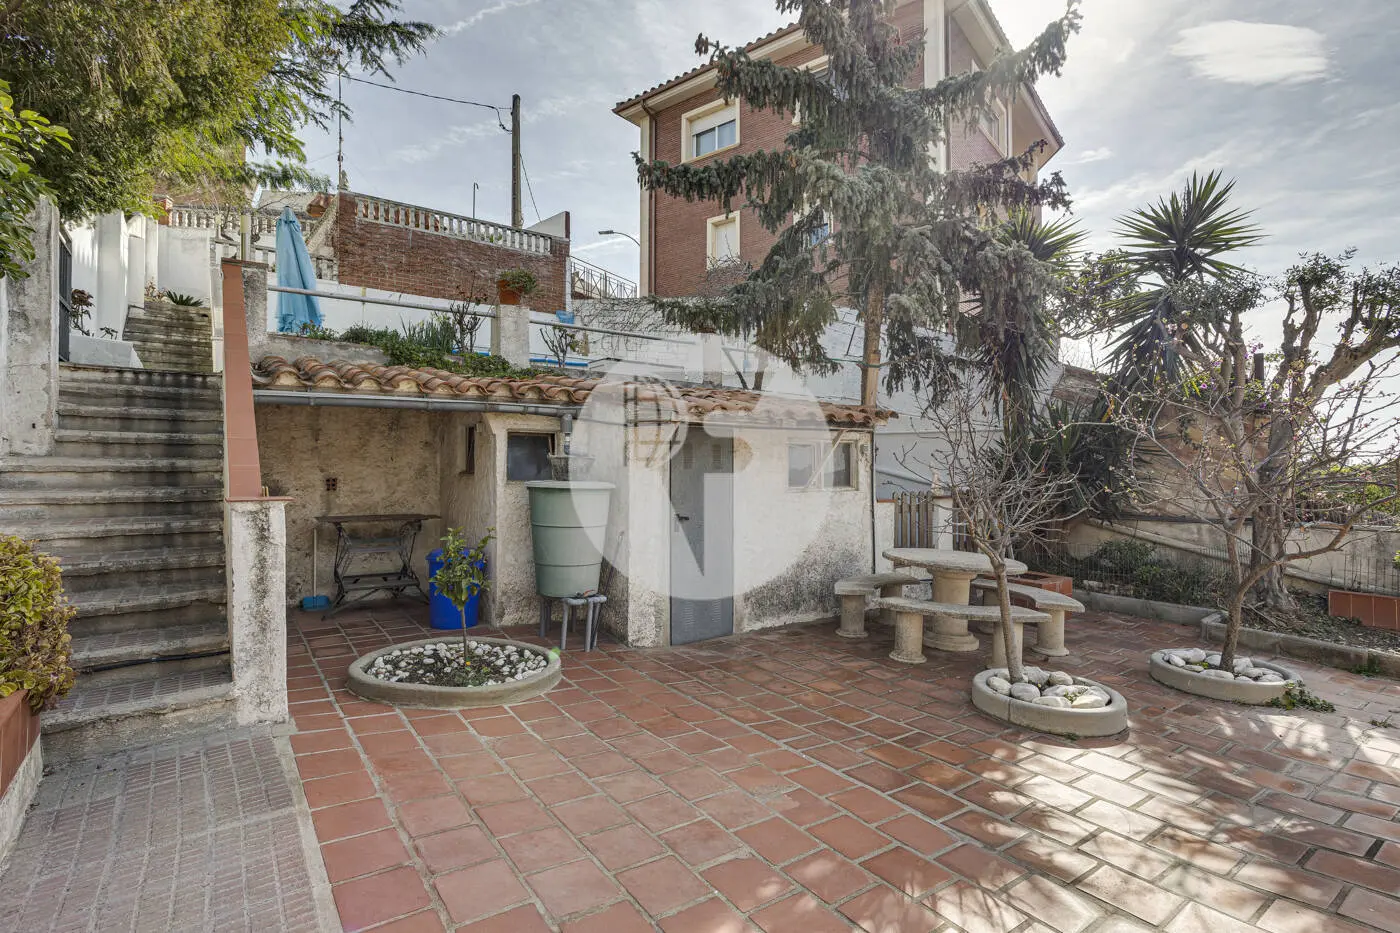  Casa amb jardí i piscina a La Miranda. 27